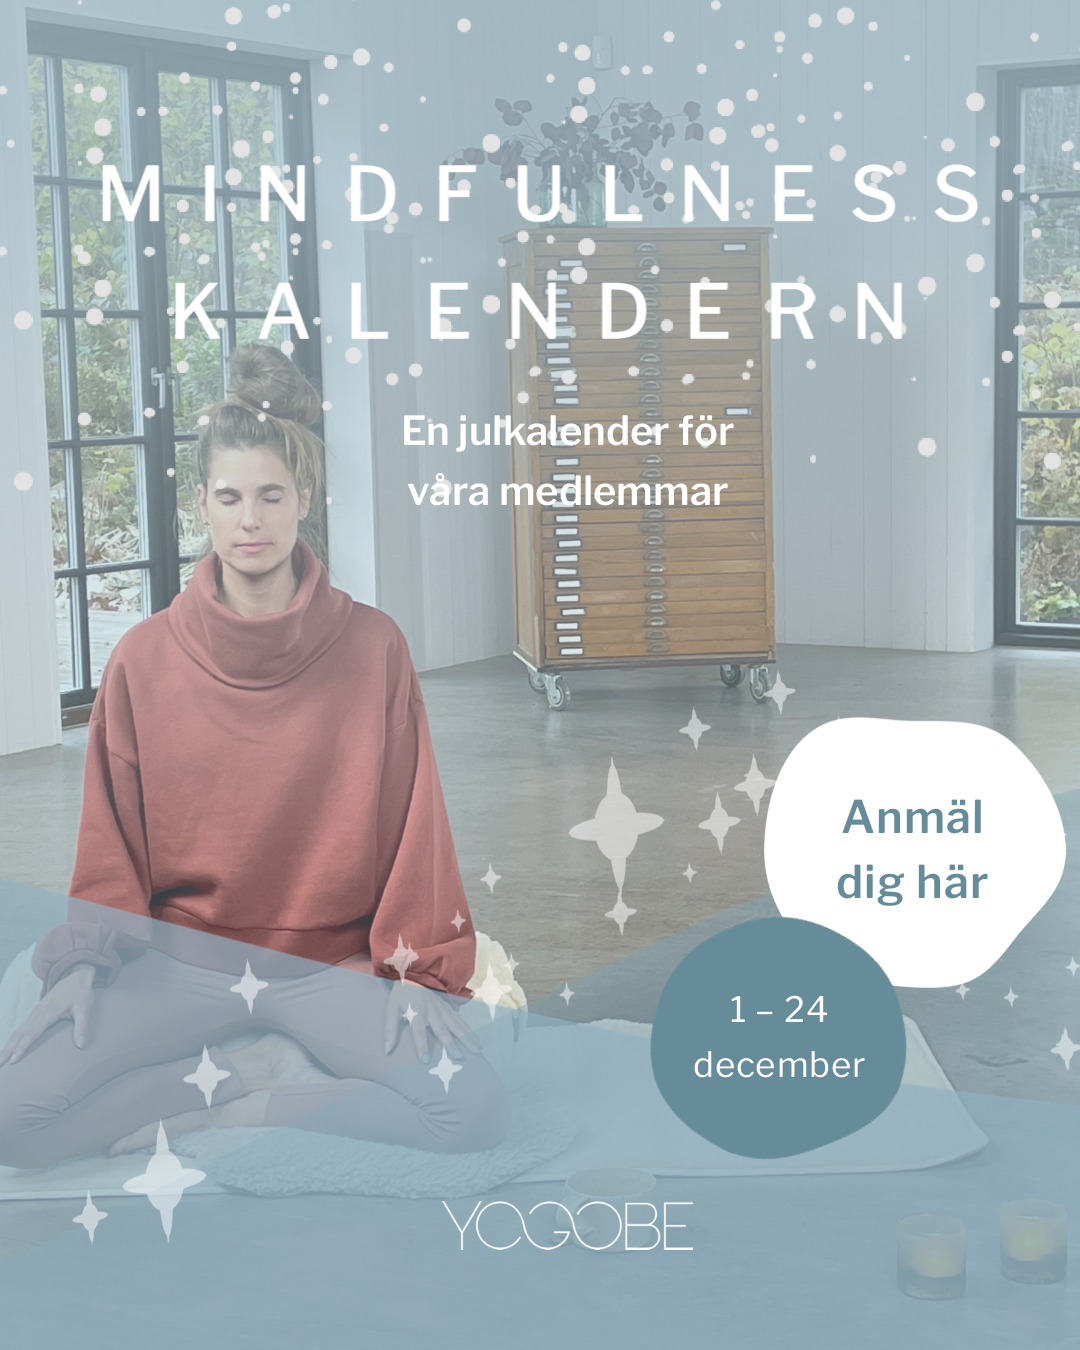 Texten Mindfulnesskalendern, samt bild på ett rum med en kvinna i yogaställning